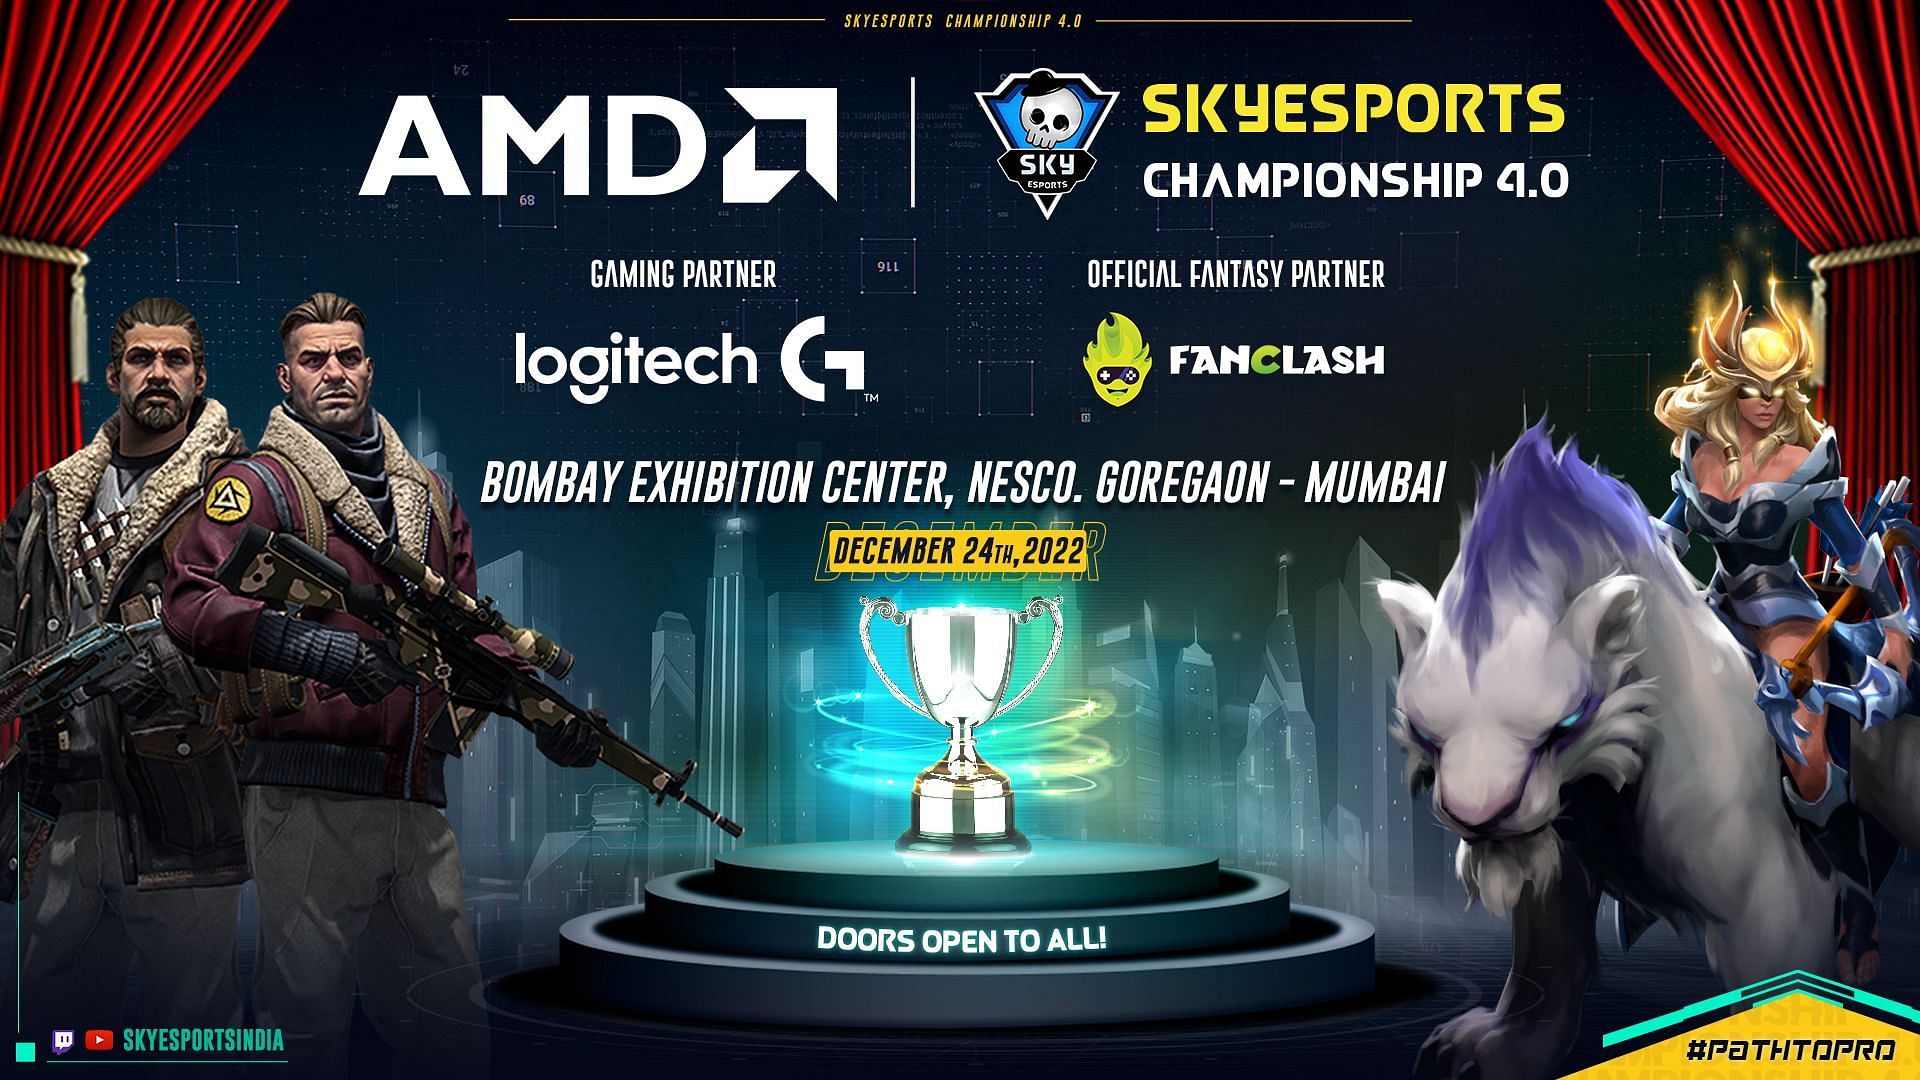 AMD Skyesports Championship 4.0 (Image via Skyesports)